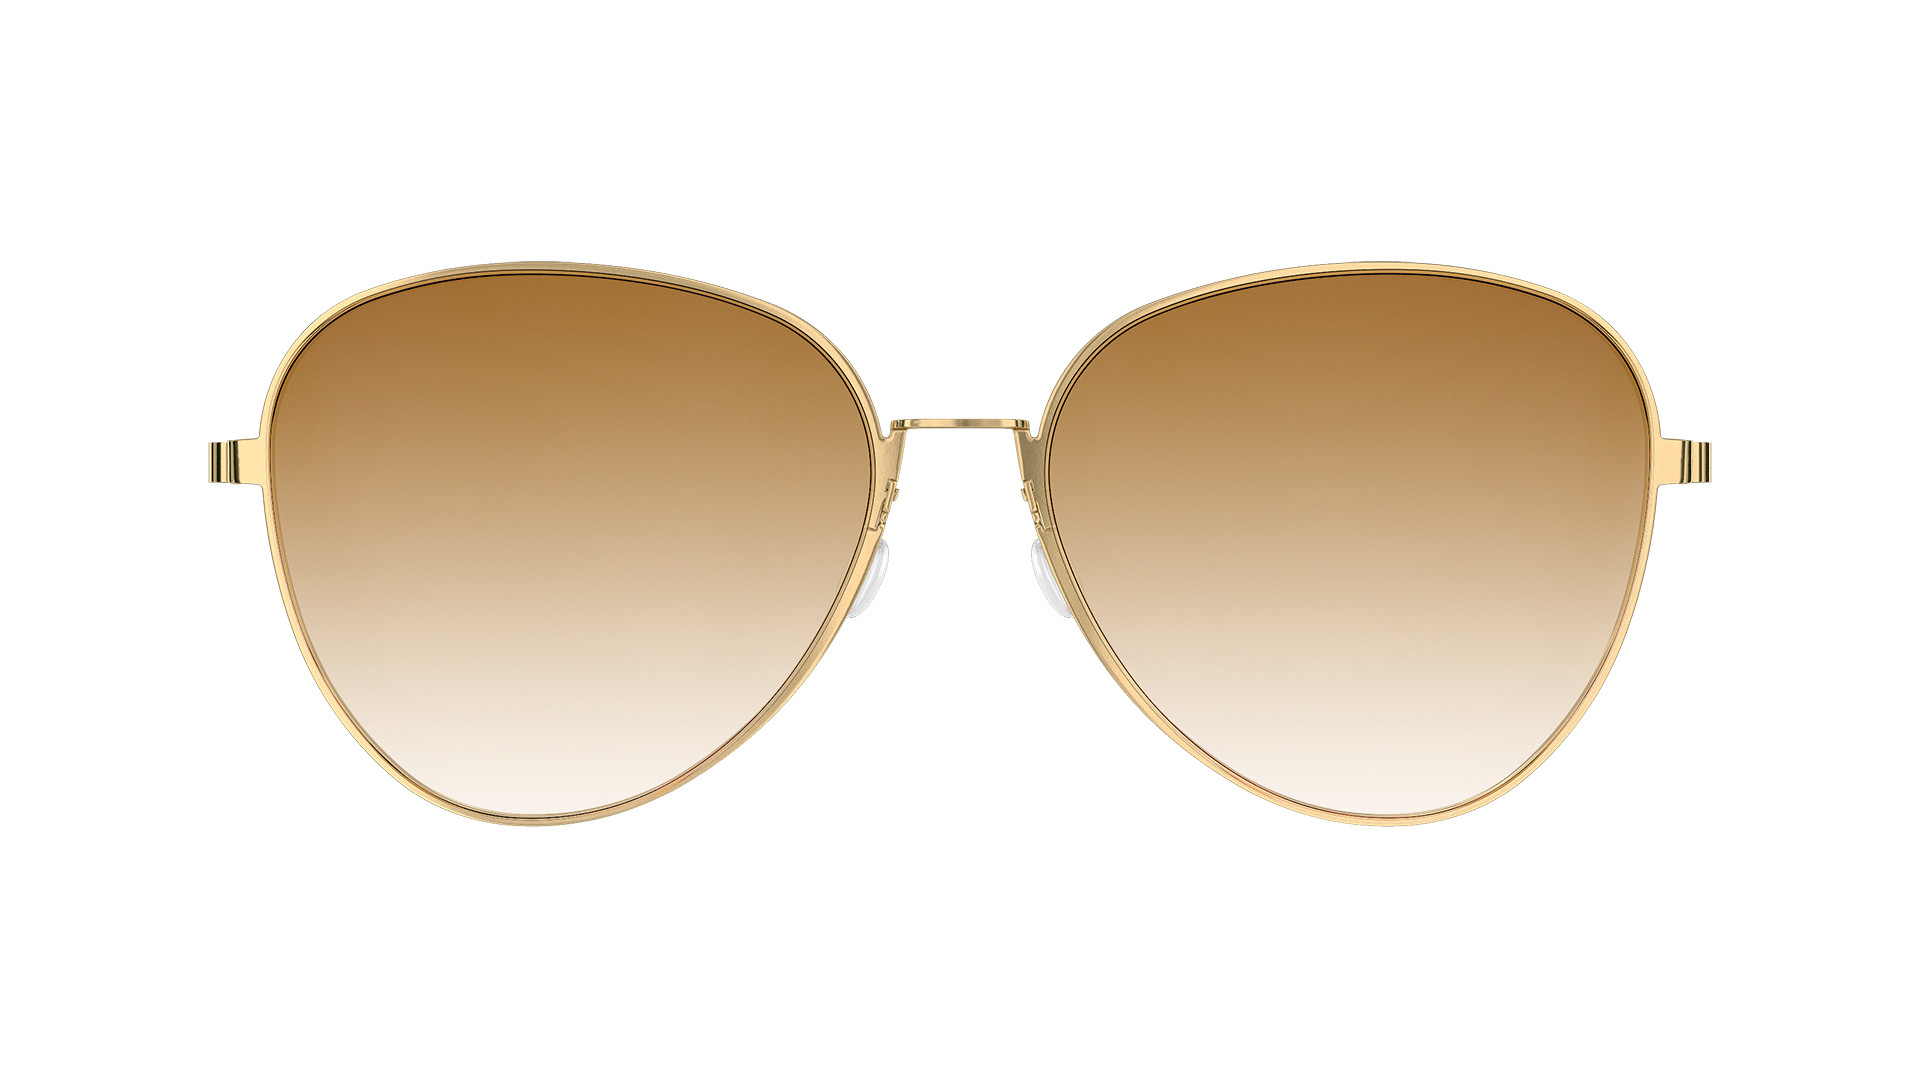 LINDBERG-Modell 8908, Pilotensonnenbrille in Gold mit braun getönten Gläsern mit Farbverlauf